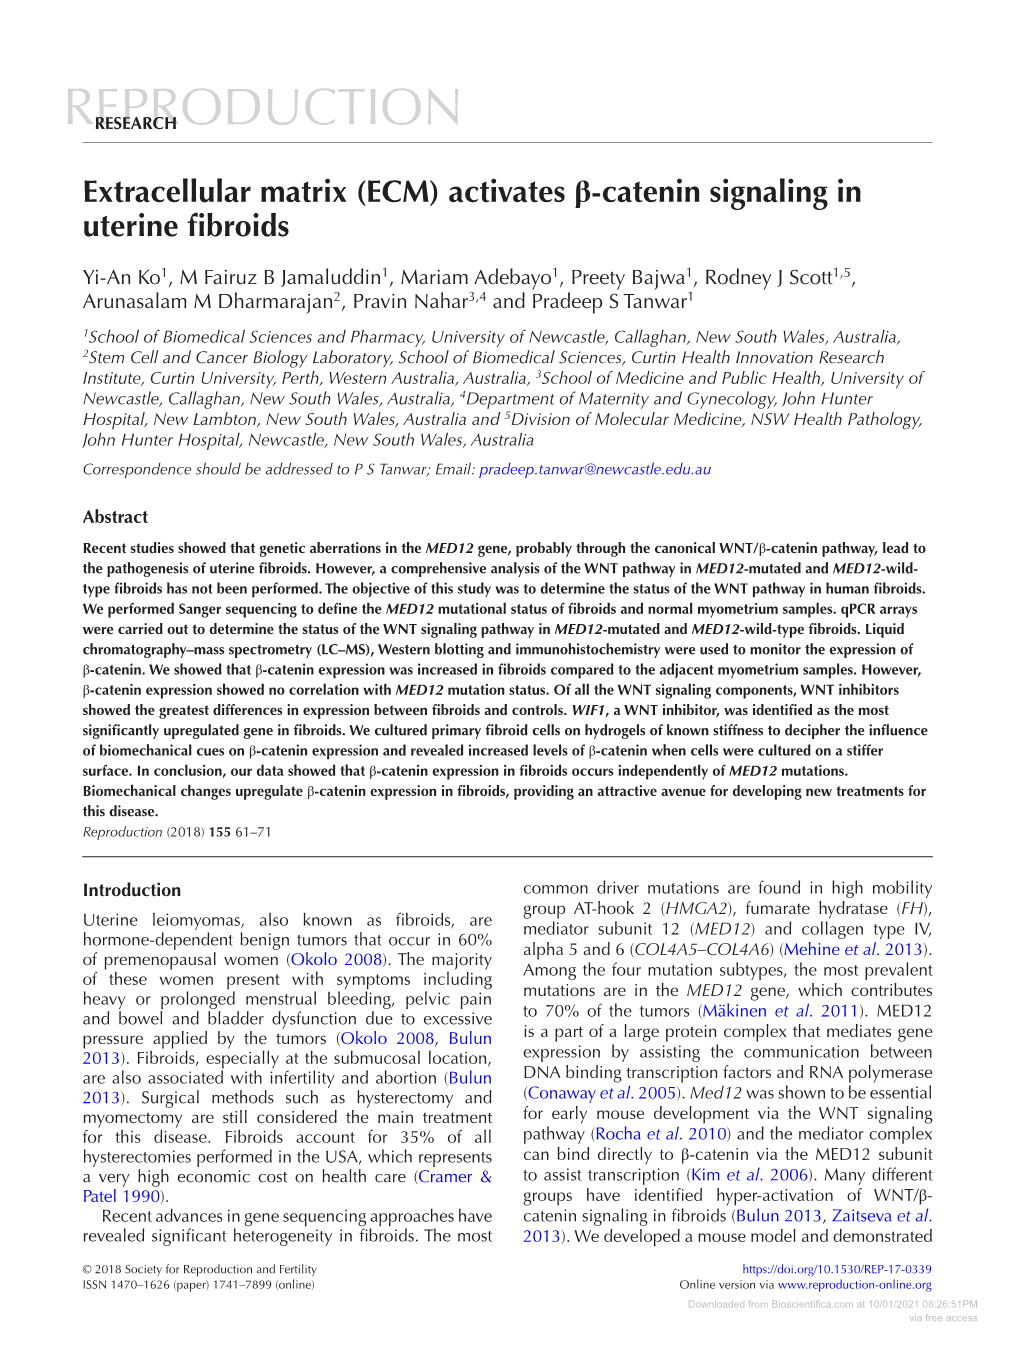 (ECM) Activates Β-Catenin Signaling in Uterine Fibroids